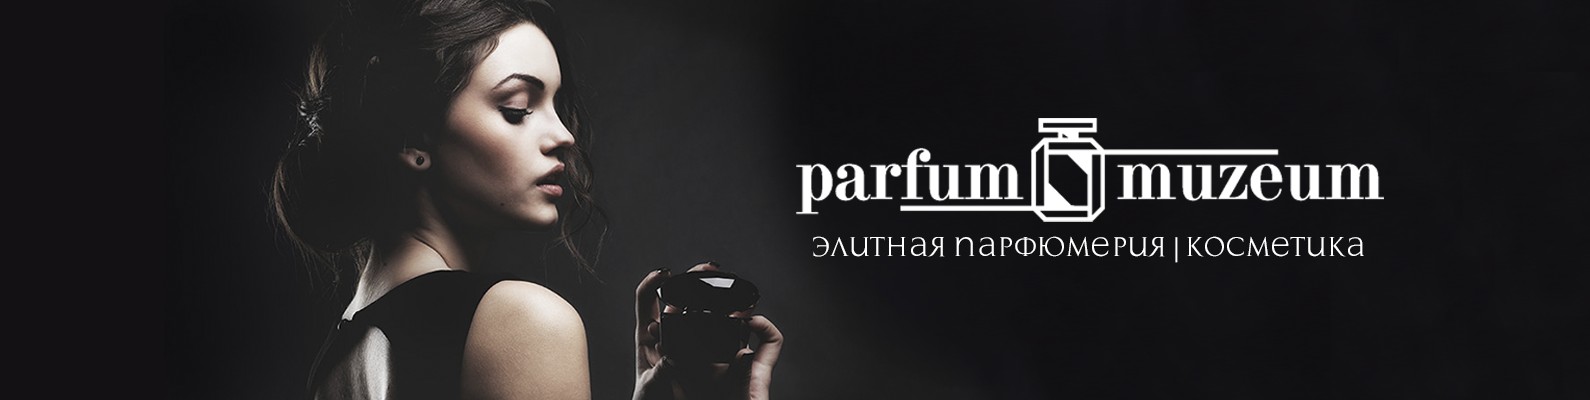 обложка сообщества вконтакте для магазина парфюмерии